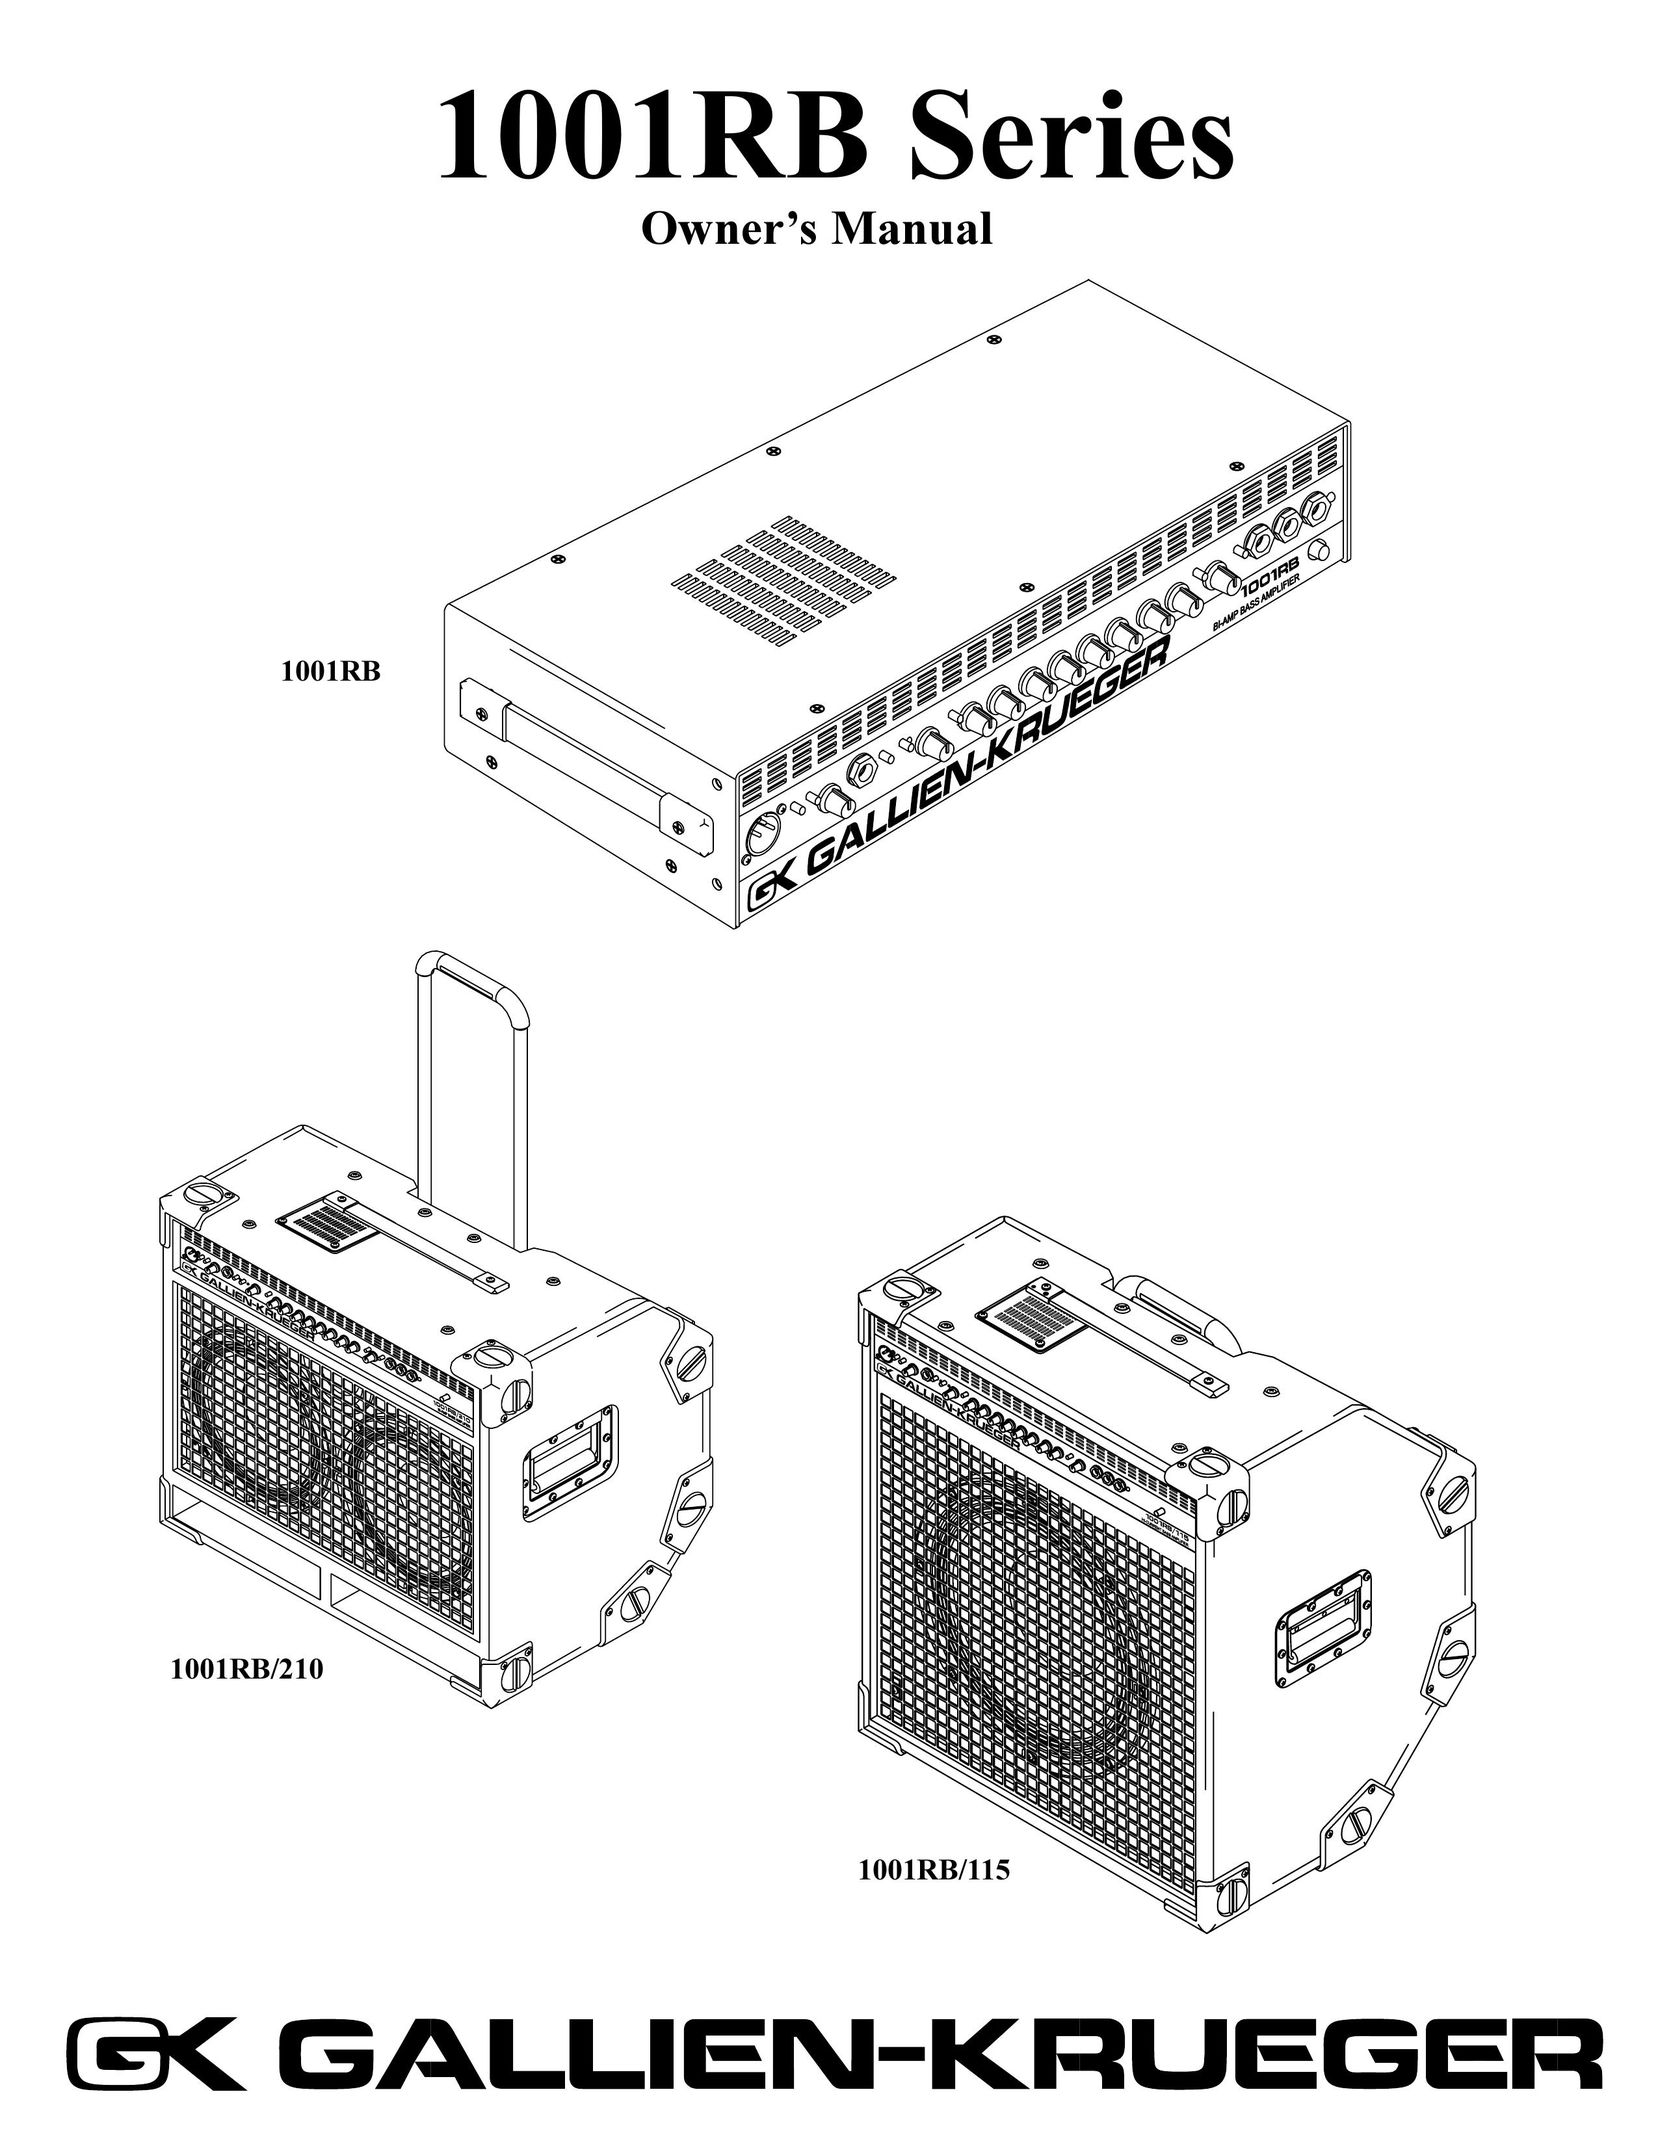 RBH Sound 1001RB/210 Speaker User Manual